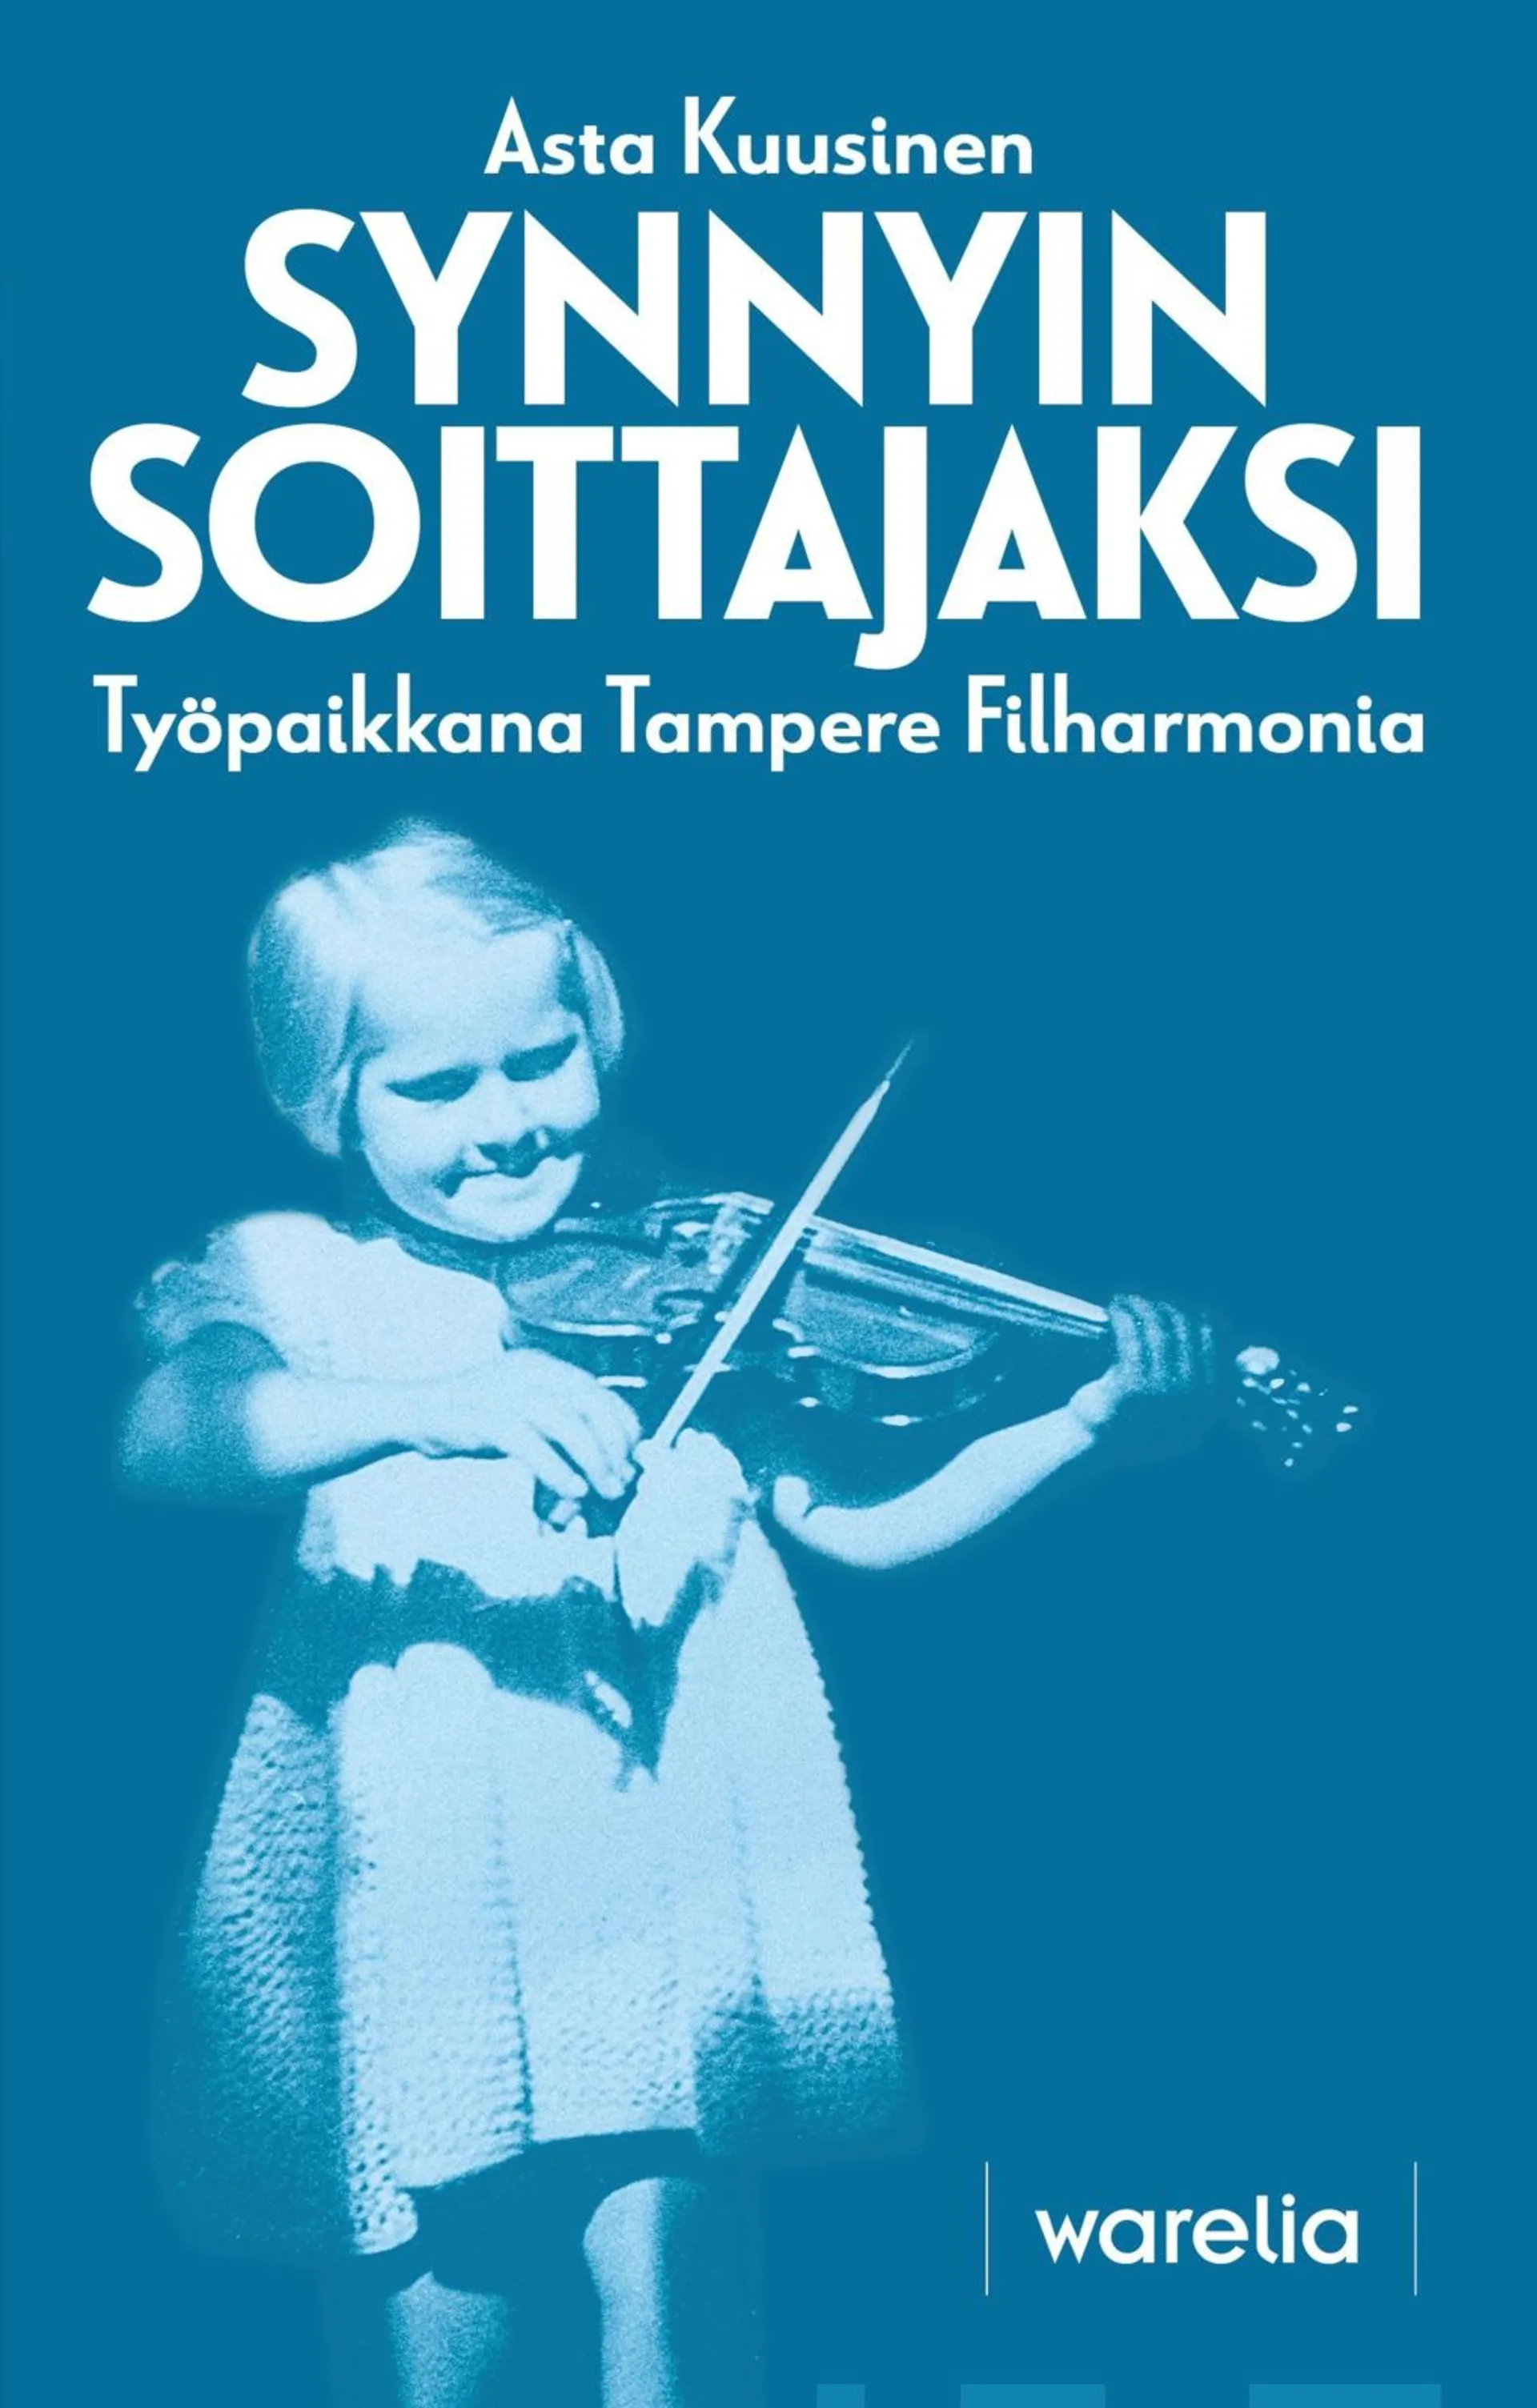 Kuusinen, Synnyin soittajaksi - Työpaikkana Tampere Filharmonia